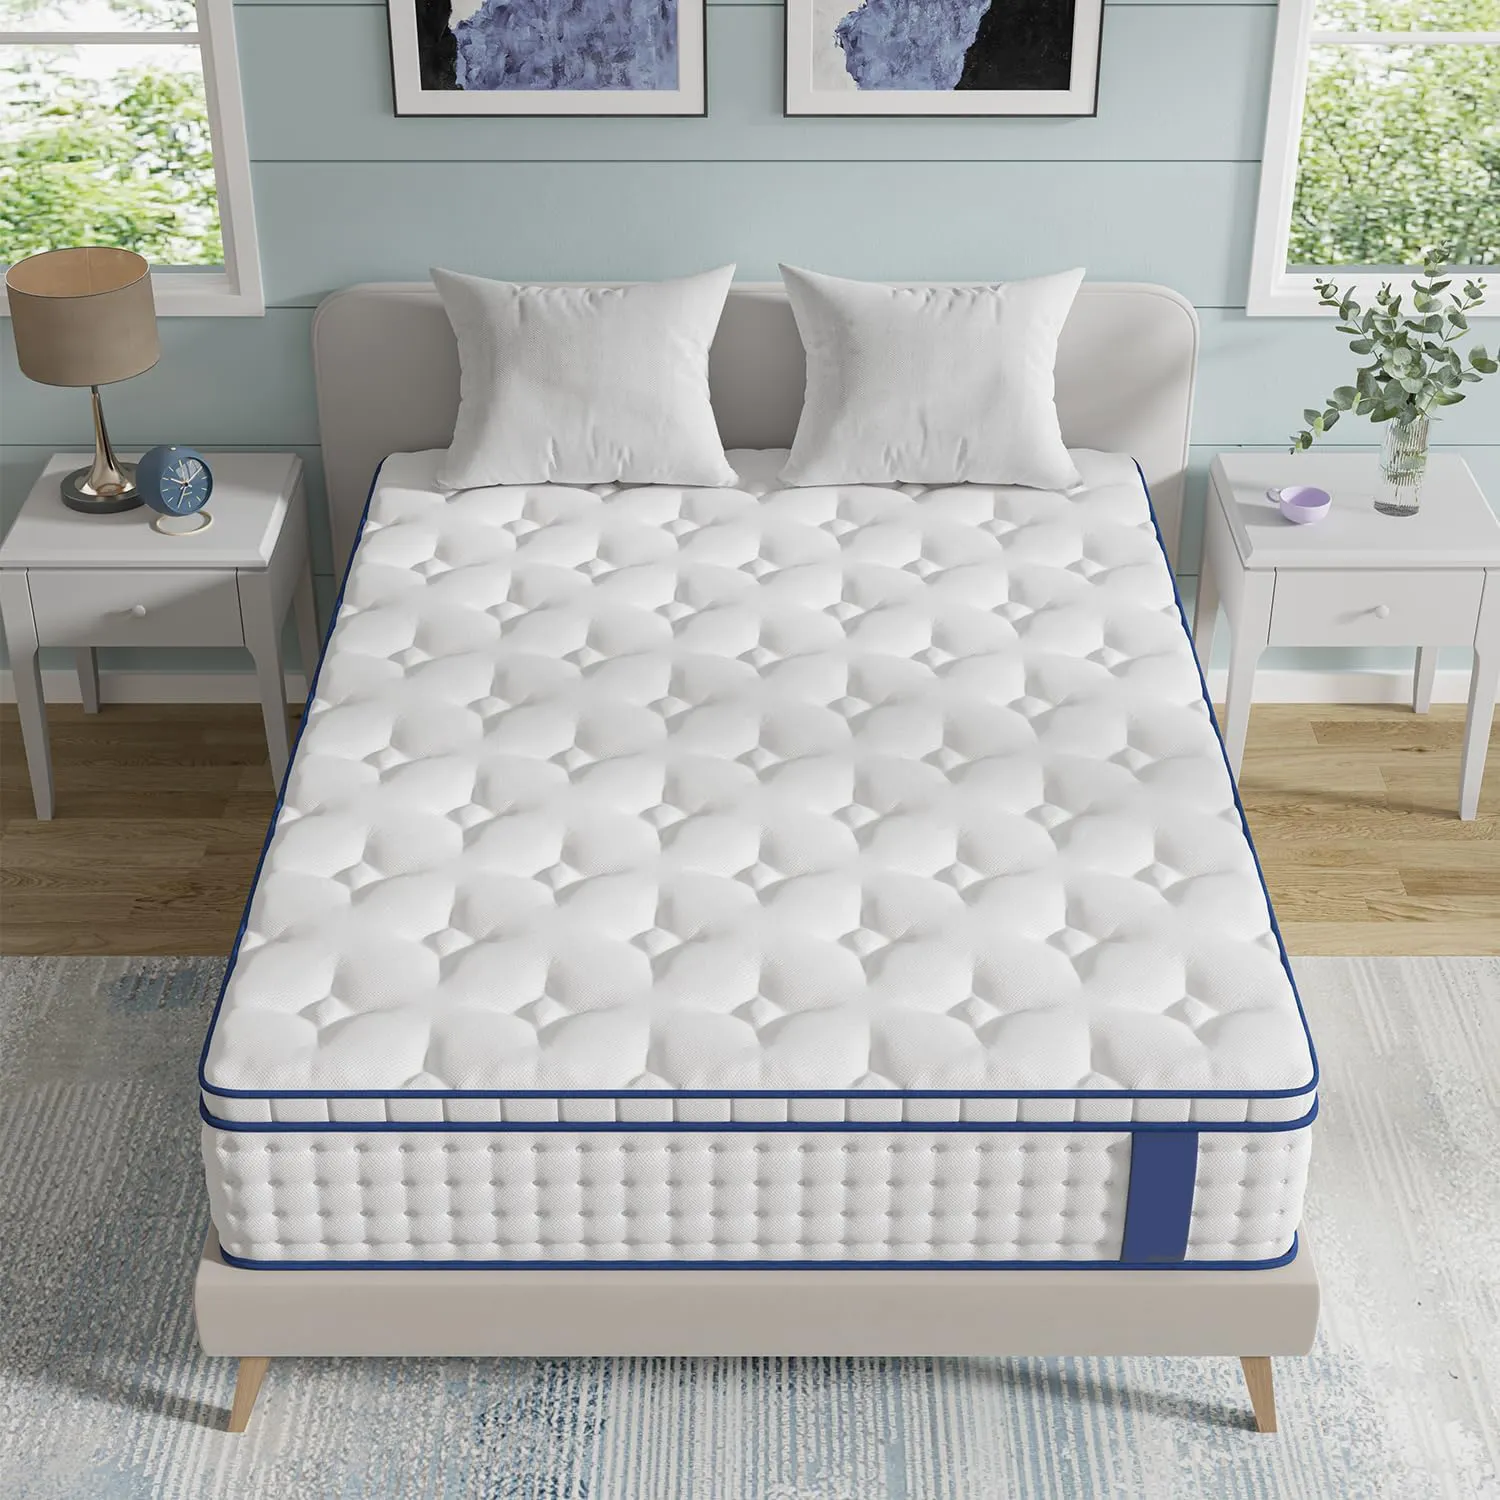 Comfort sonno King size miglior materasso a molle con tessuto impermeabile Hypo-allergenic gel memory foam in lattice matrass